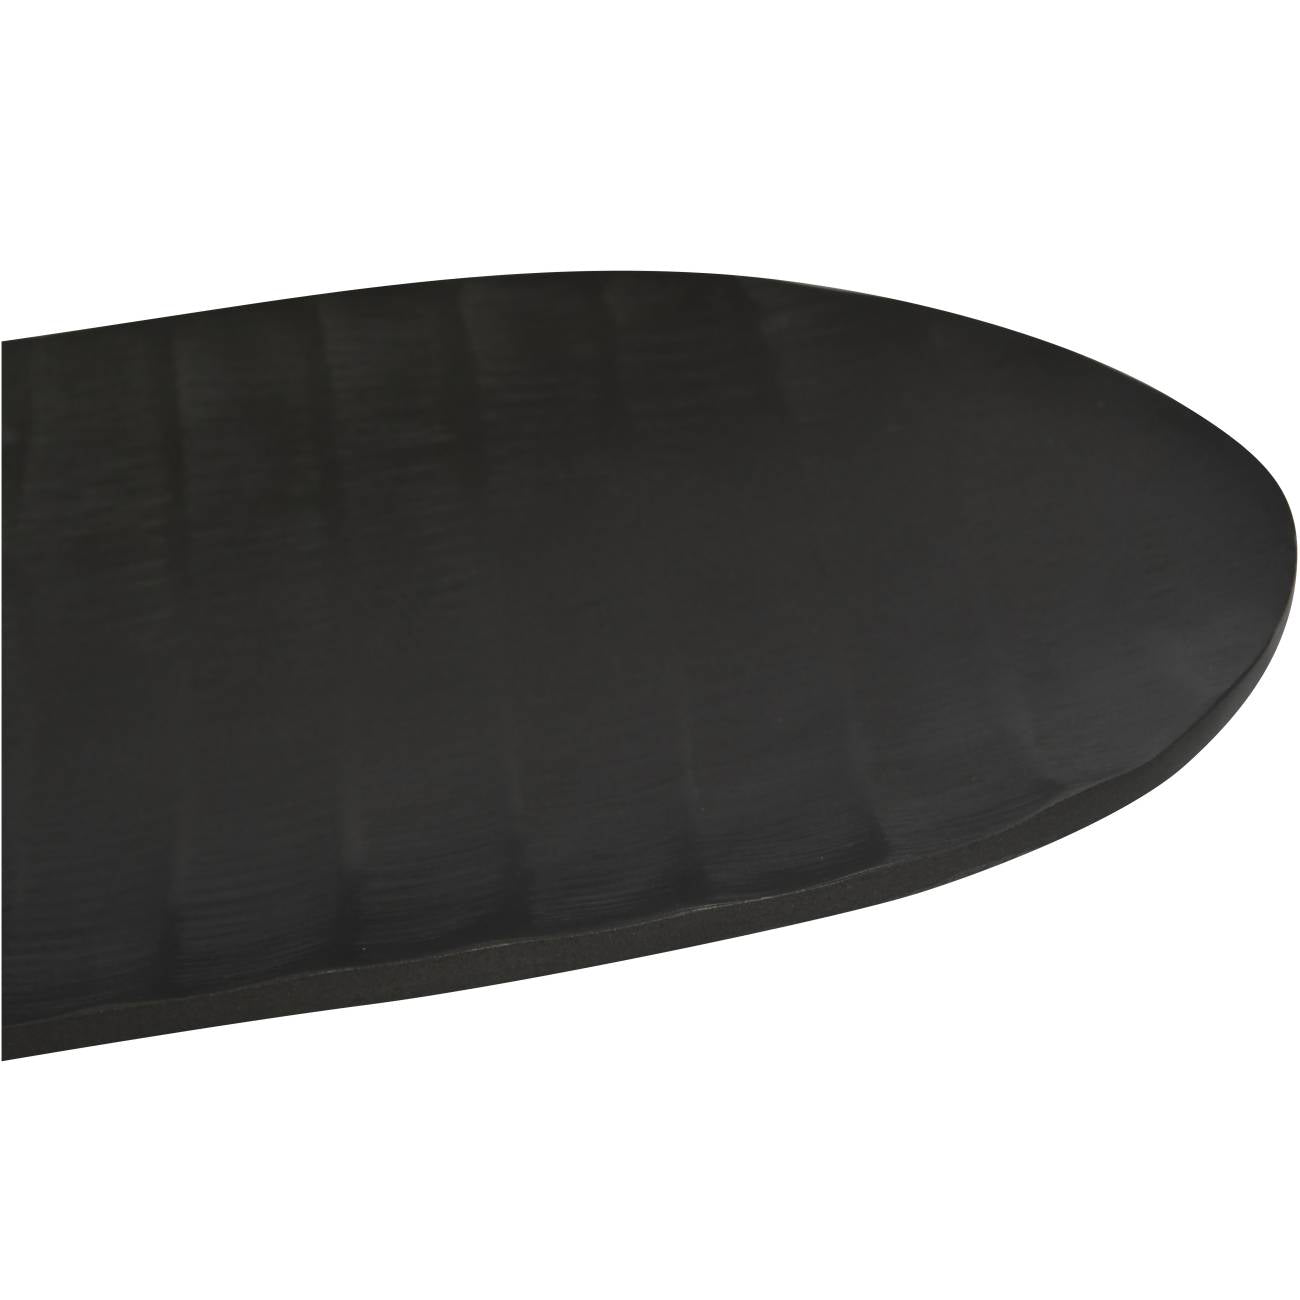 Iconic Ripples Graphite Aluminium Elliptical Platter